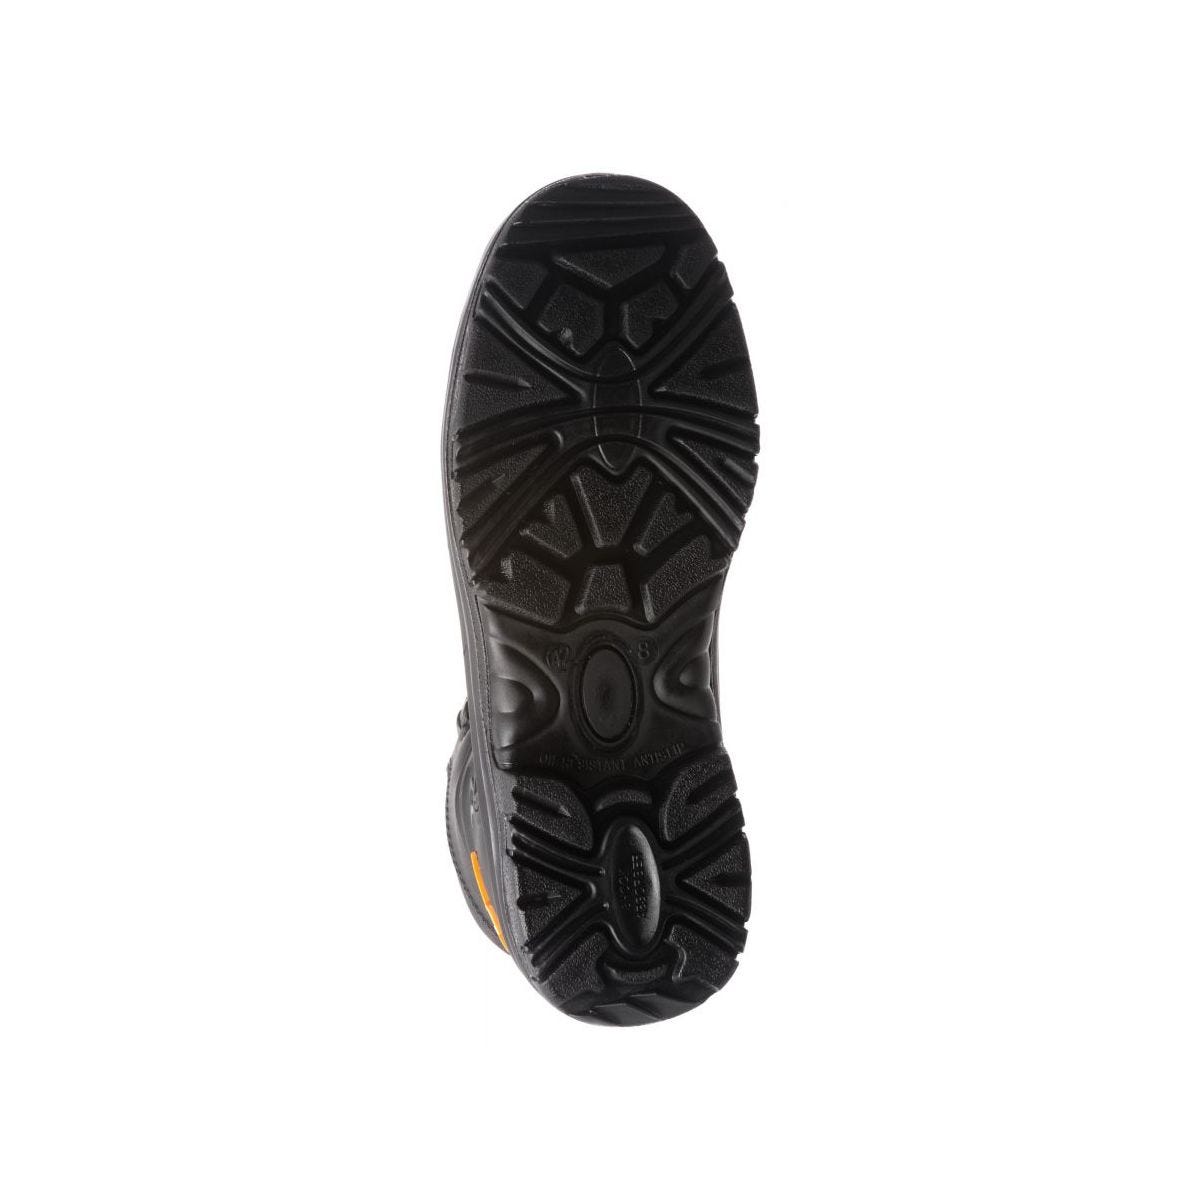 Chaussures de sécurité hautes S3 SRC OPAL composite Noir - Coverguard - Taille 43 4